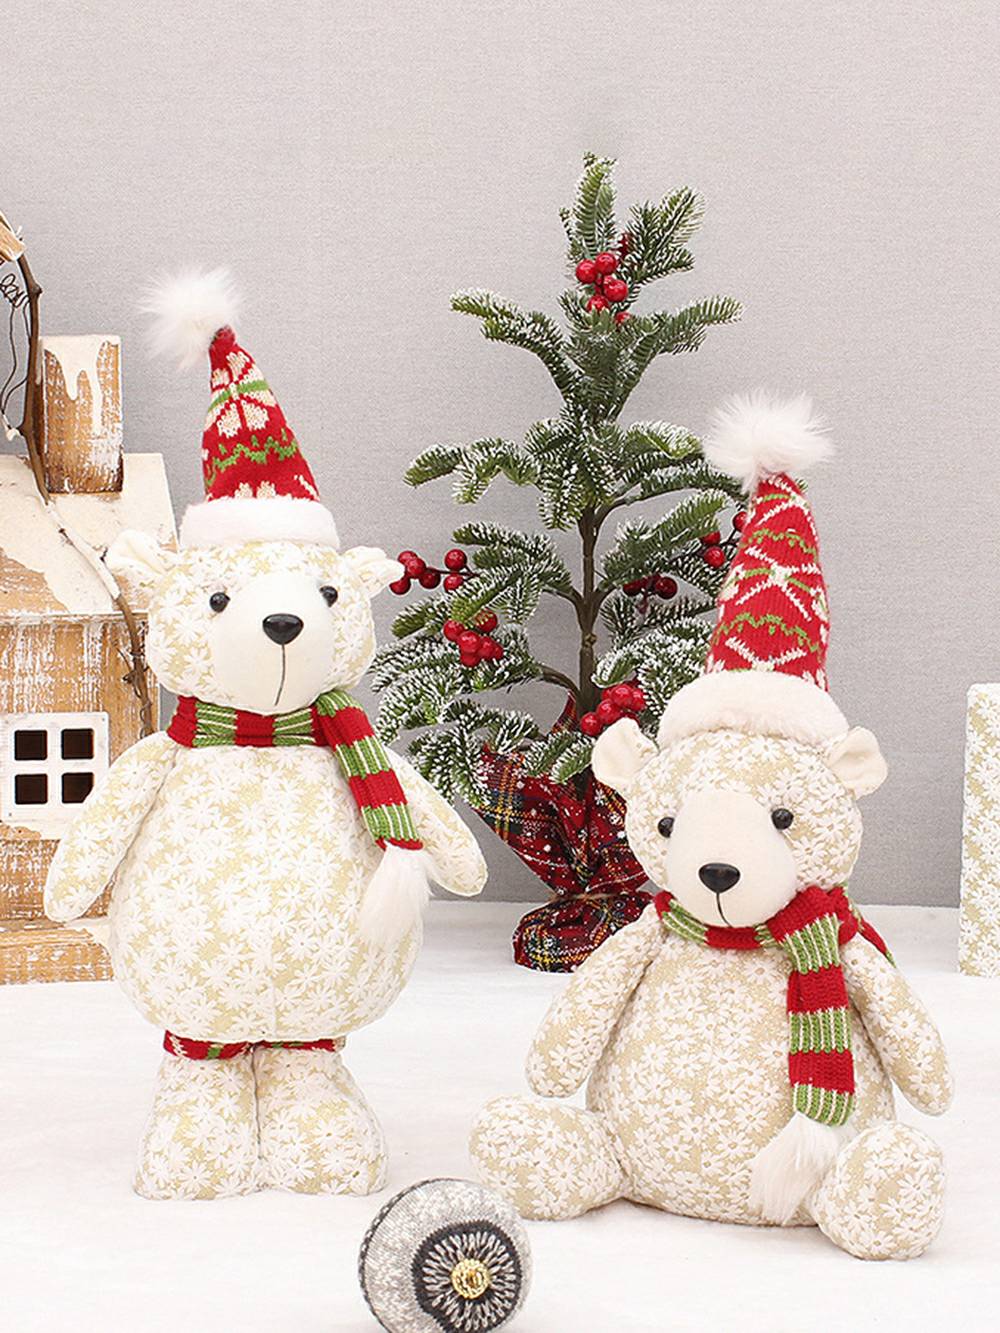 Χριστουγεννιάτικα στολίδια κούκλας από υφασμάτινο χιονονιφάδα κεντητά